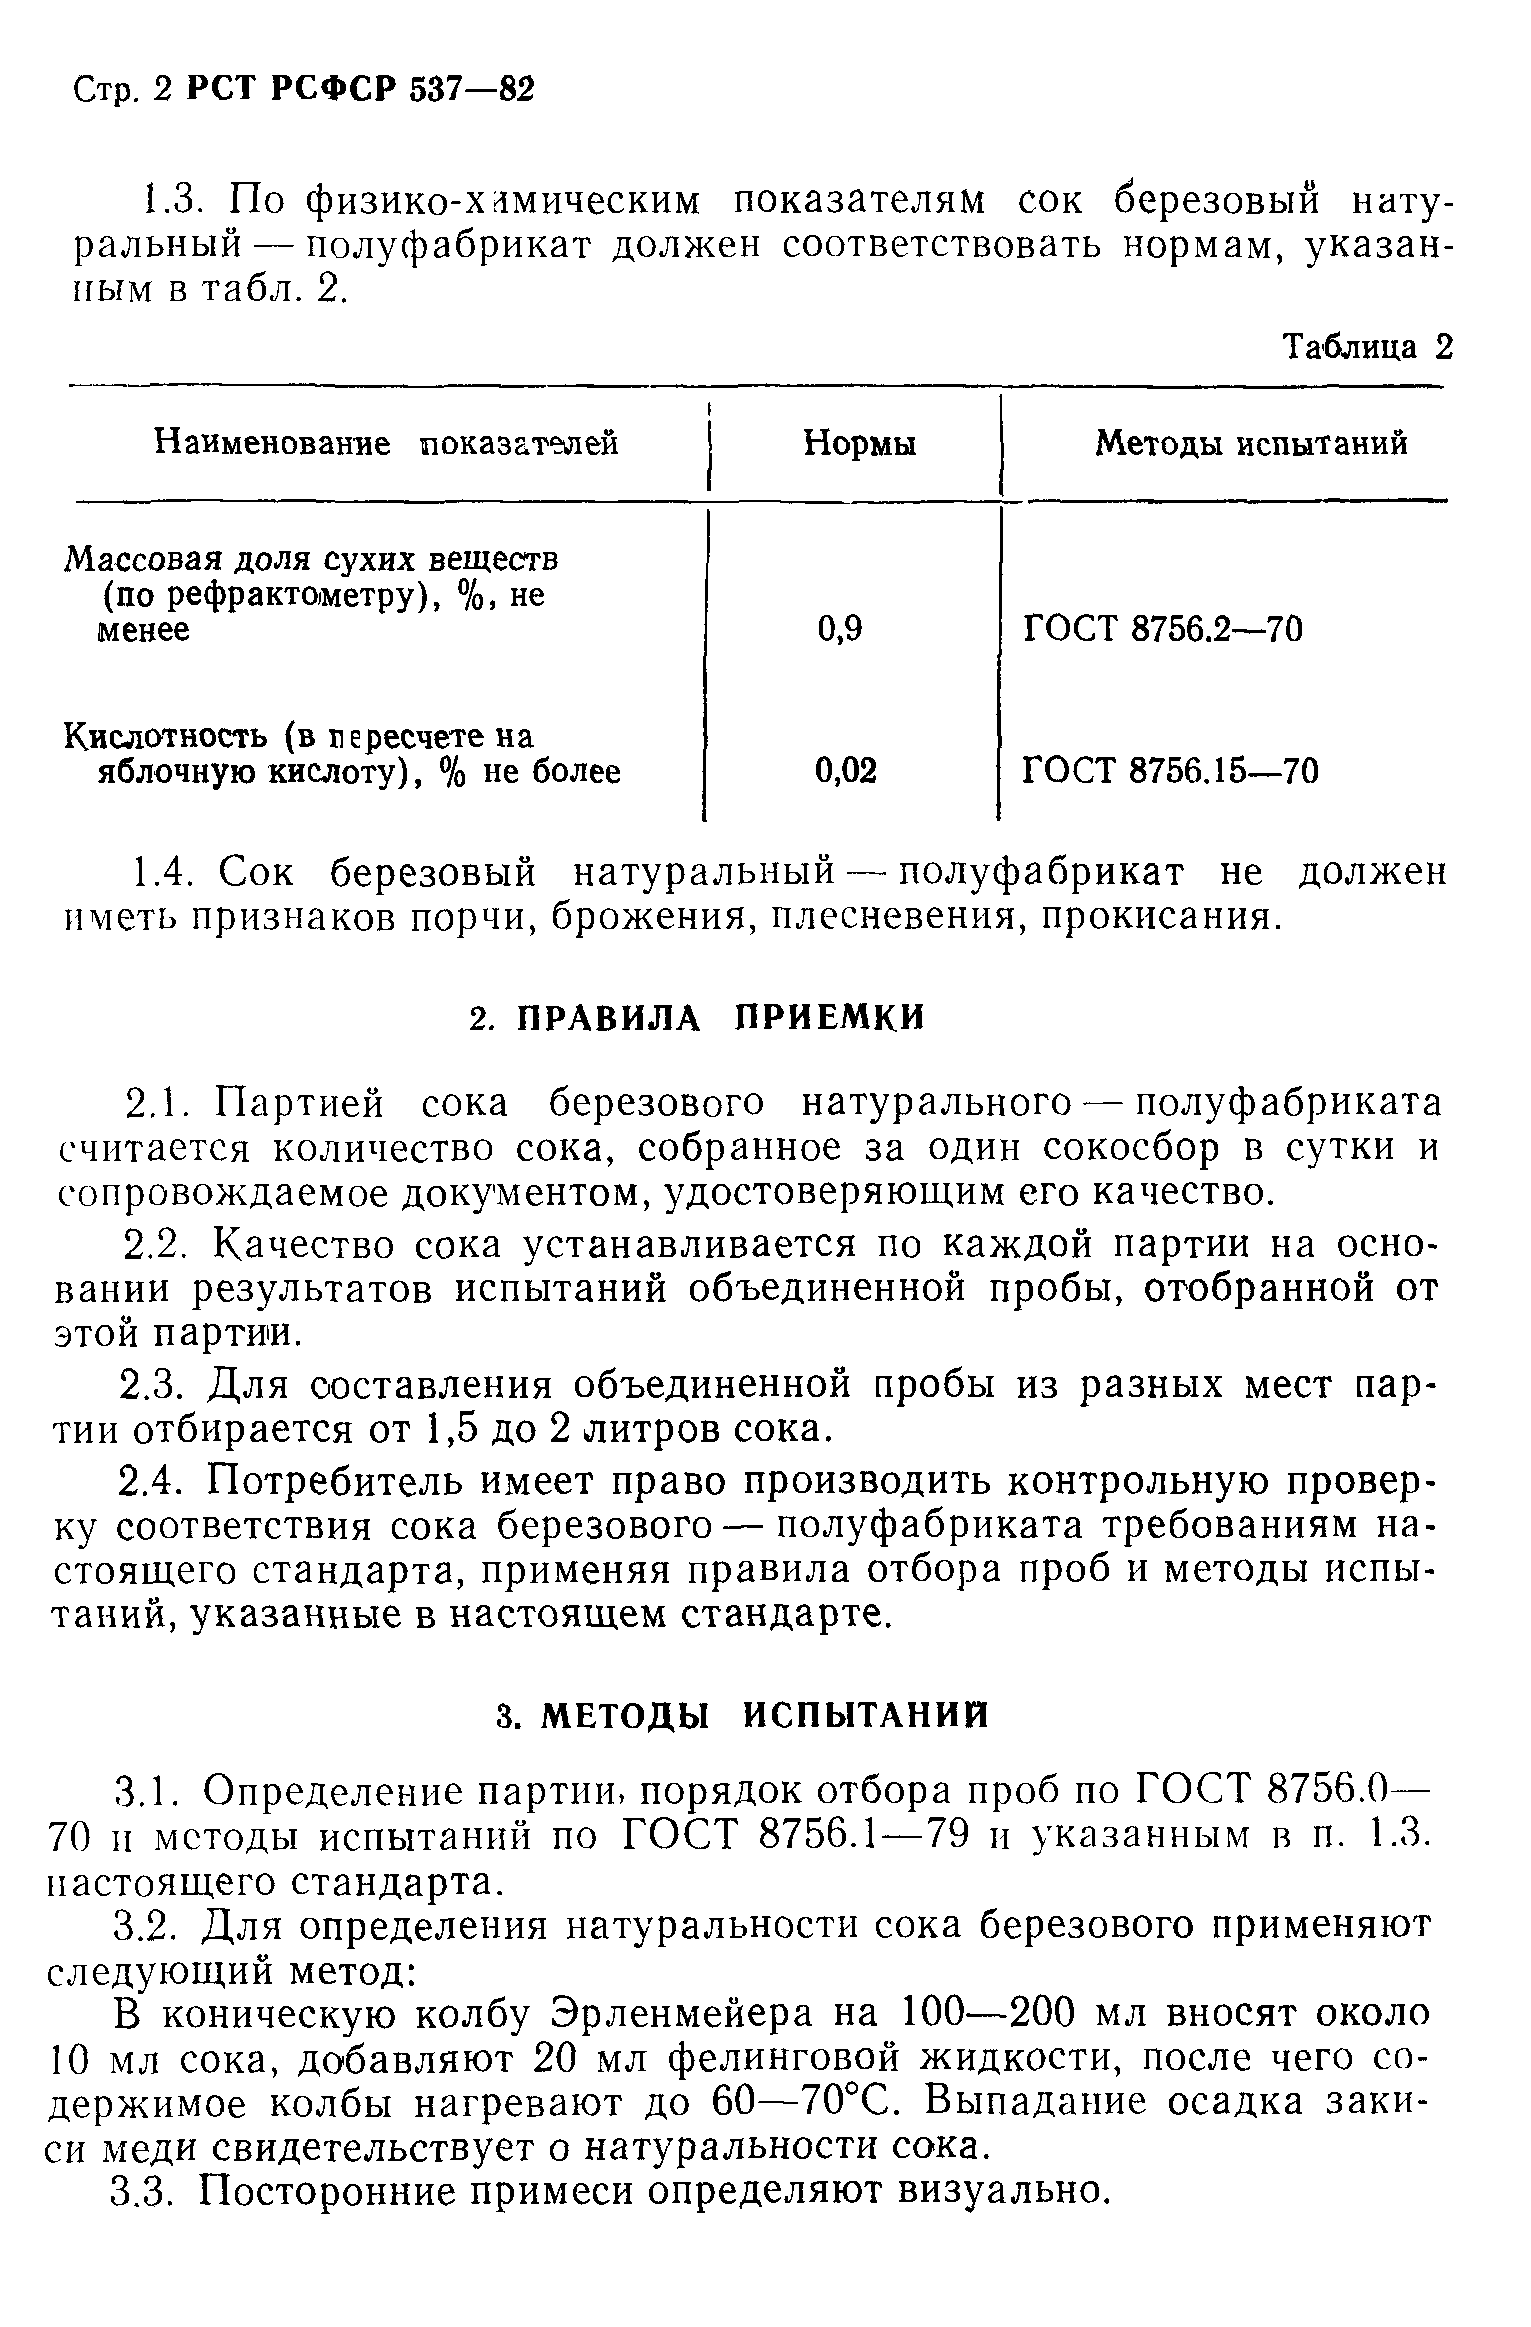 РСТ РСФСР 537-82